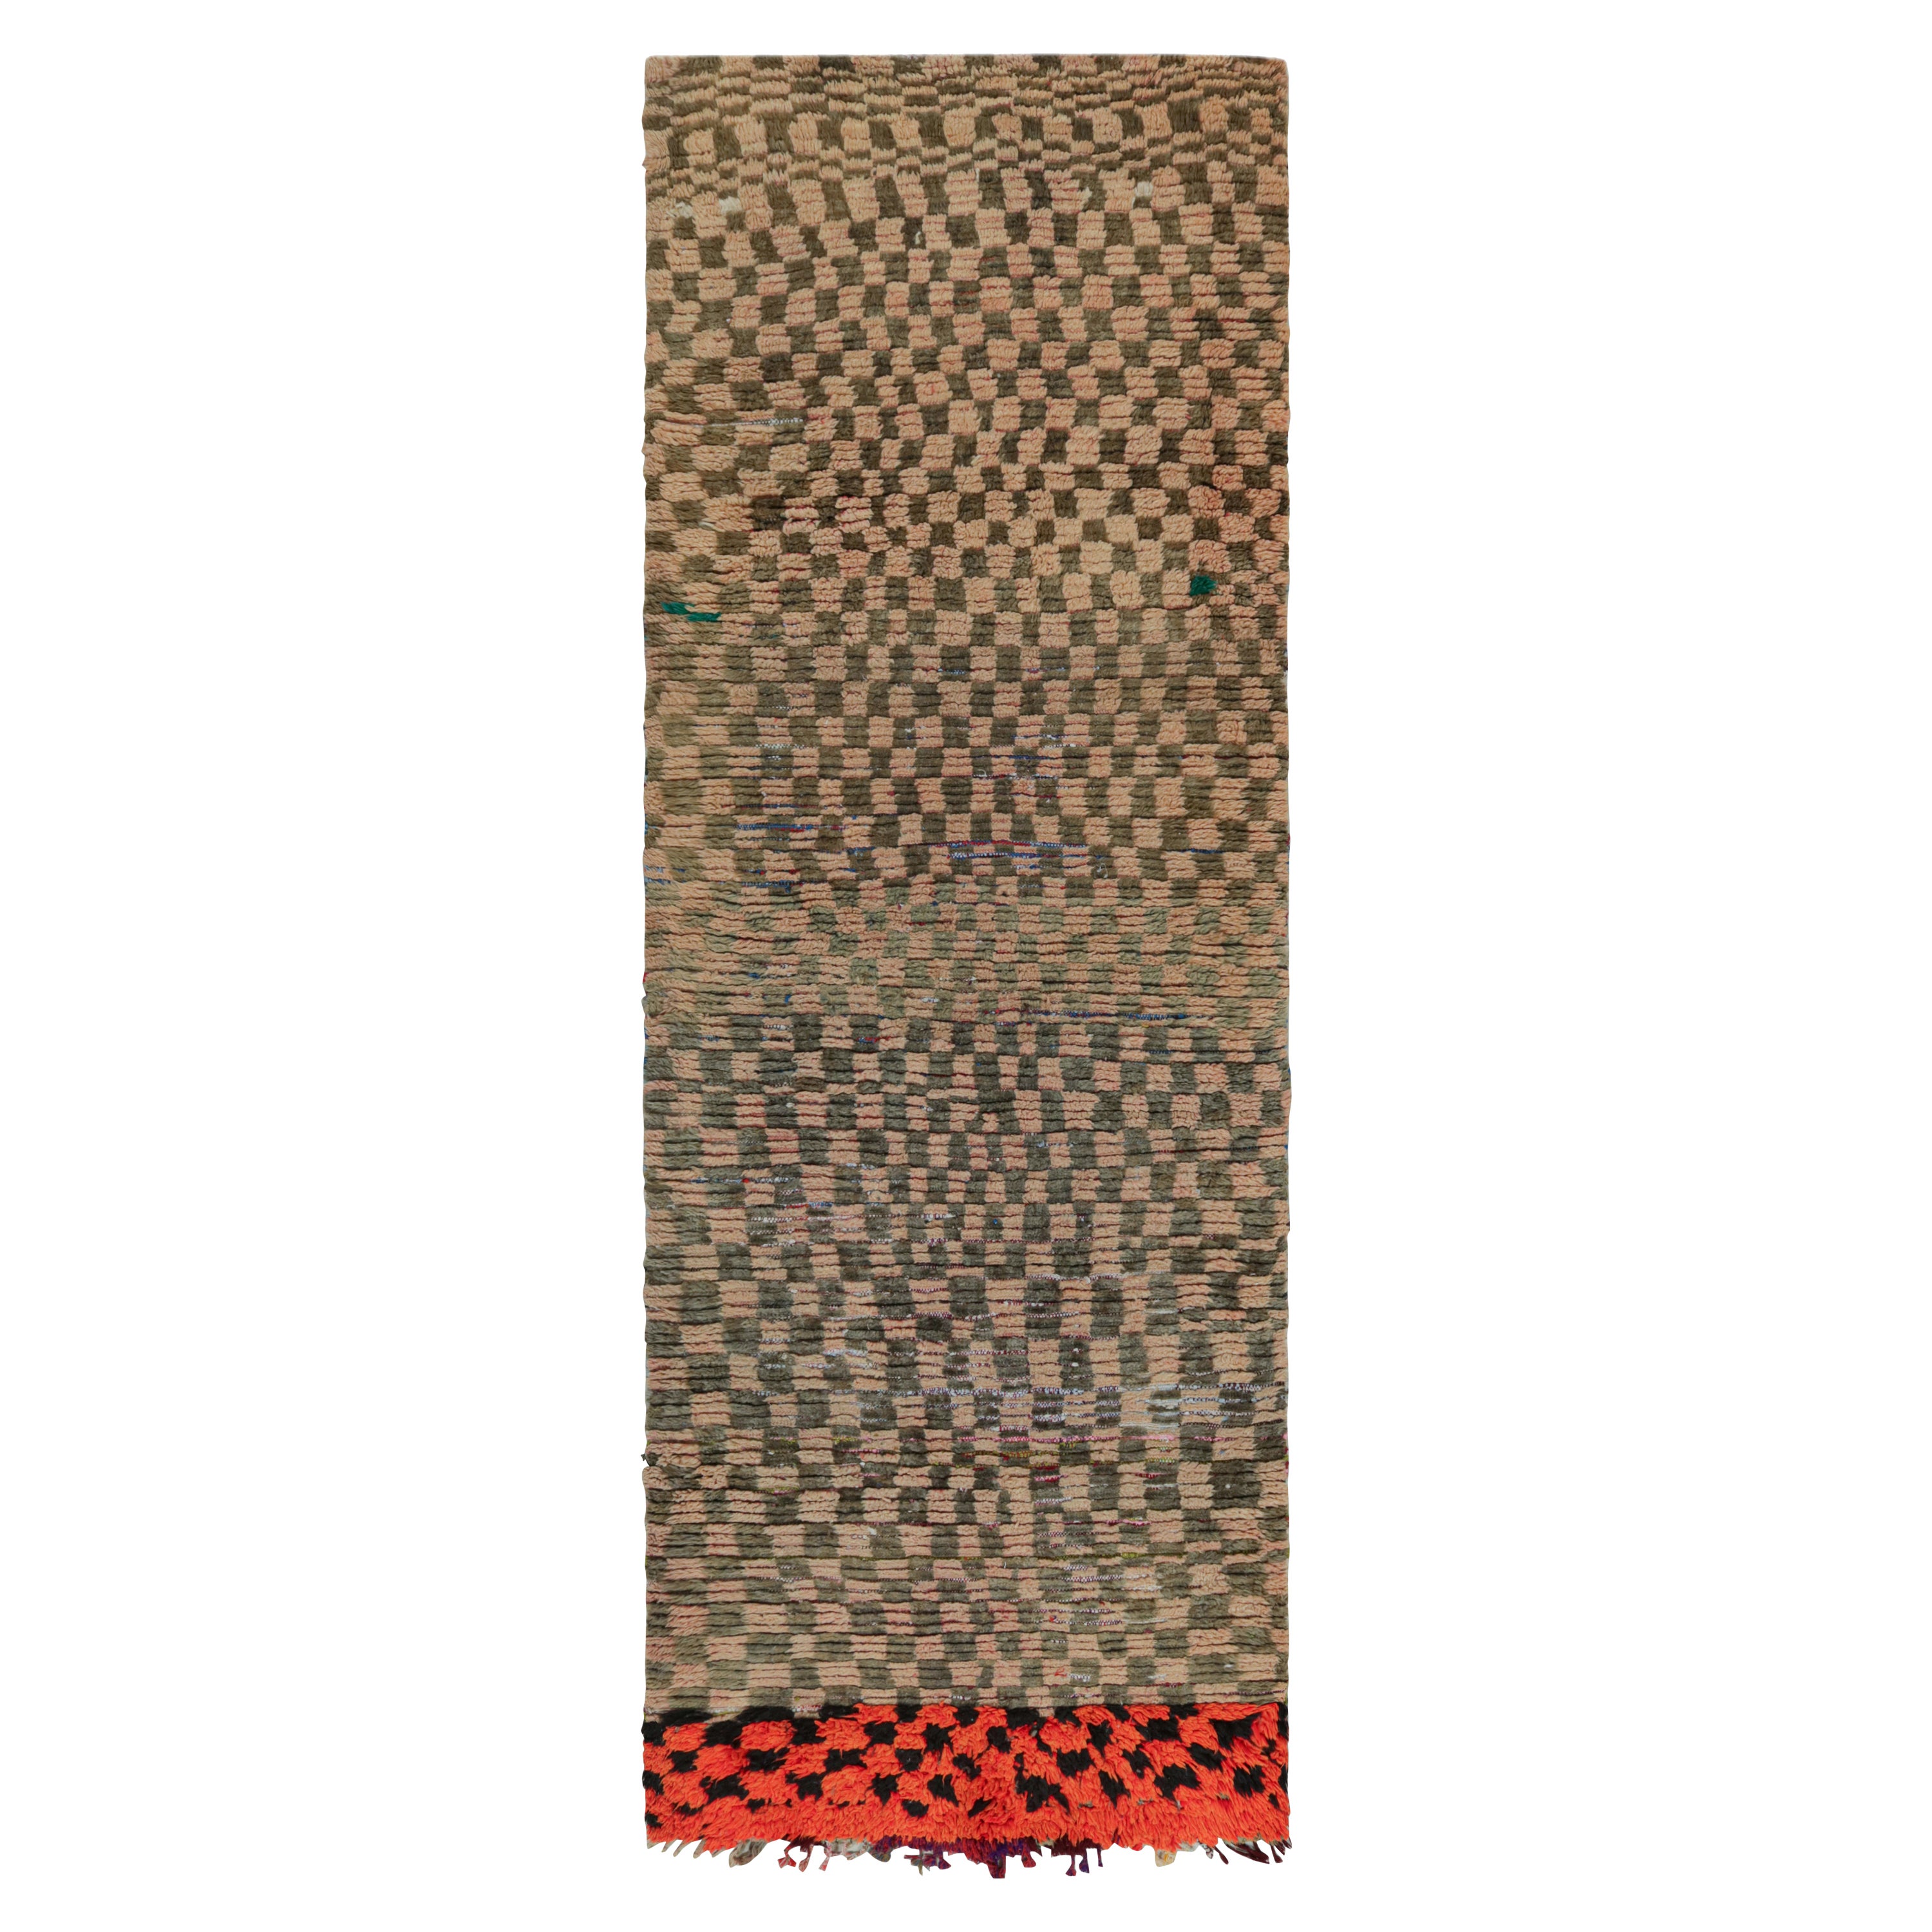 Tapis de course marocain Azilal des années 1950 à motifs tribaux polychromes par Rug & Kilim